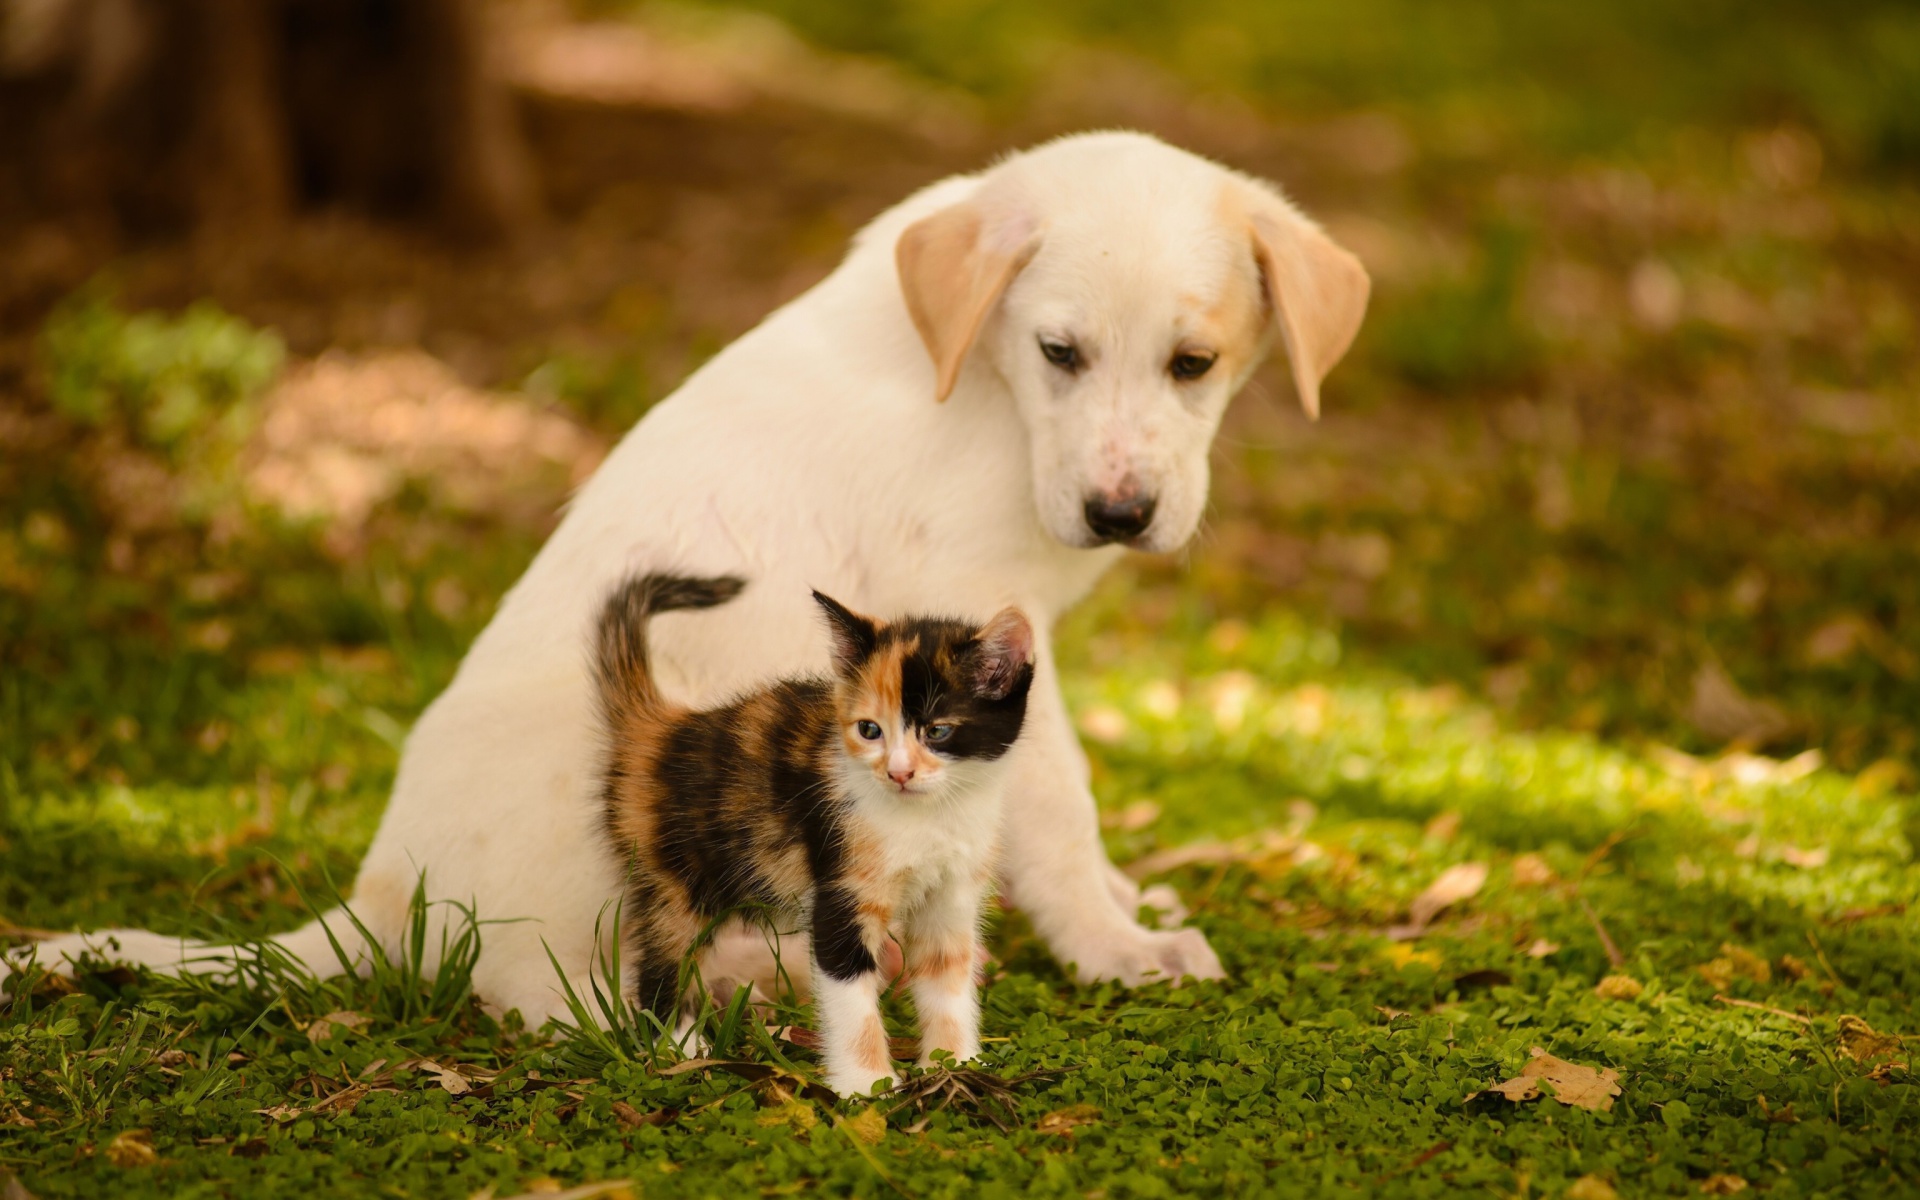 Puppy and Kitten wallpaper 1920x1200